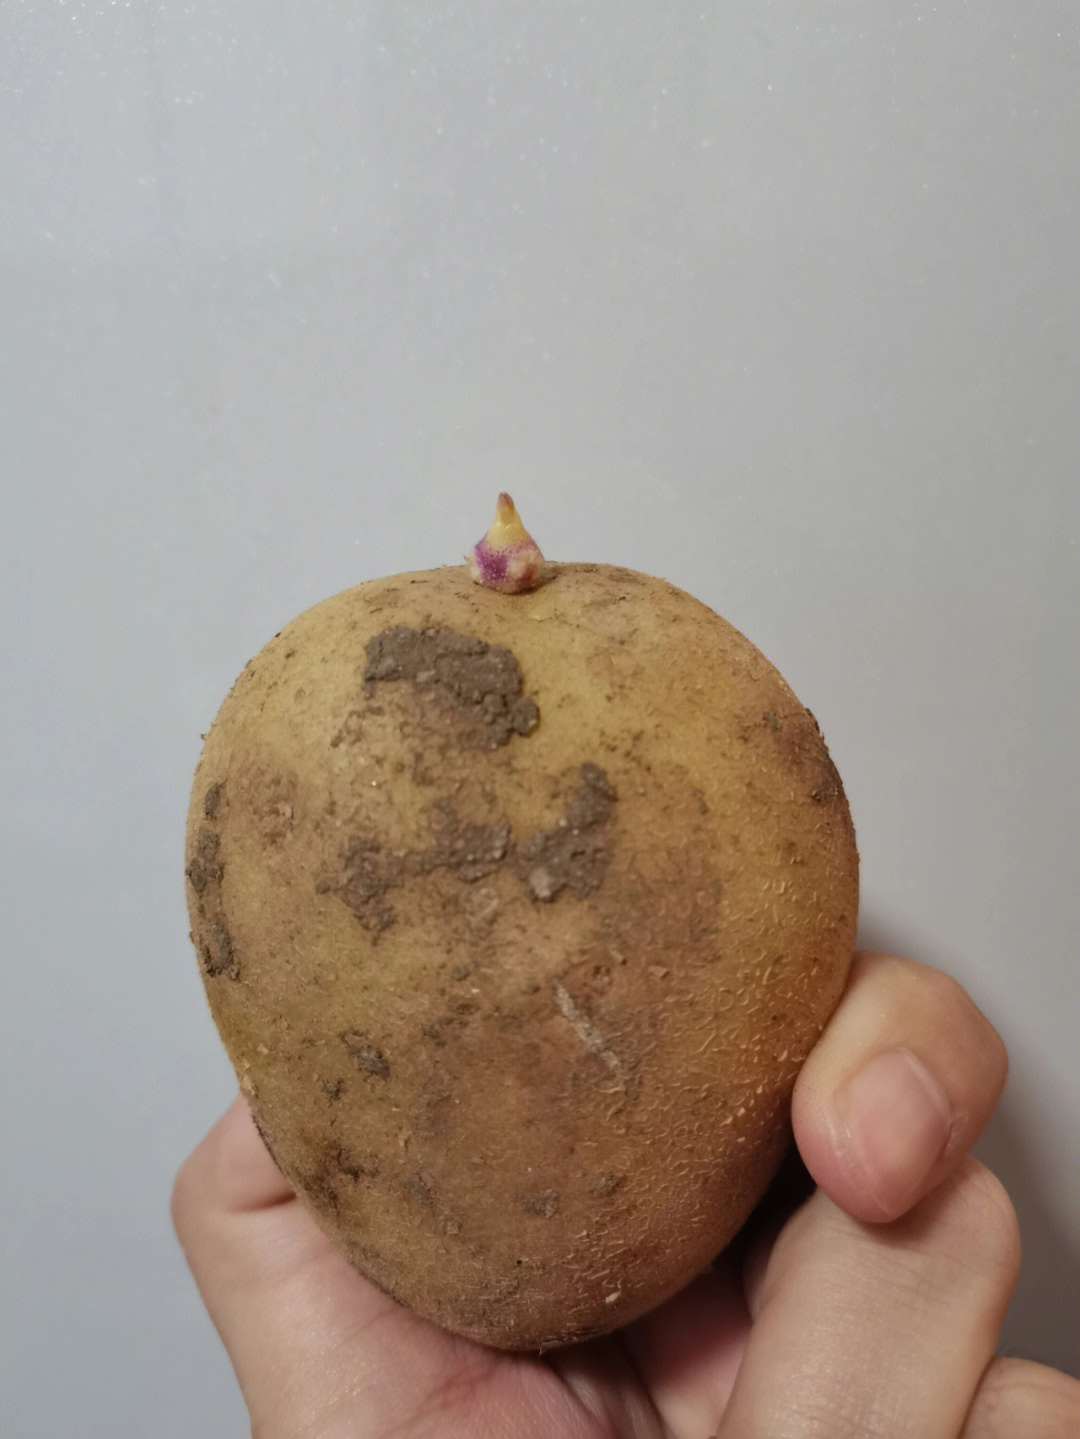 发芽的土豆切开的照片图片